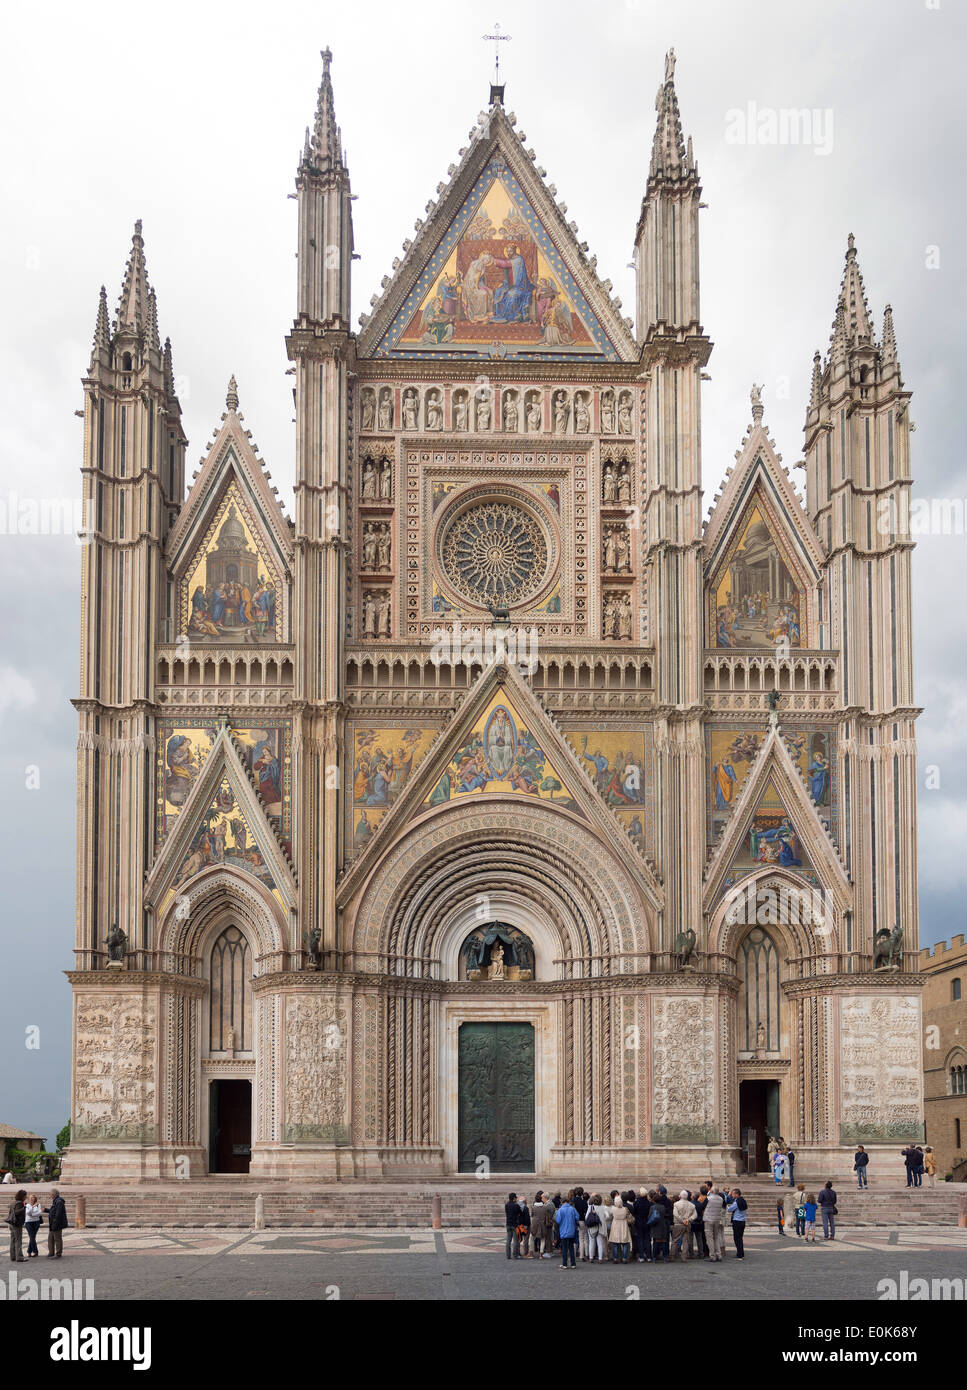 Vue de la façade de la cathédrale d'Orvieto, Ombrie, Italie Banque D'Images